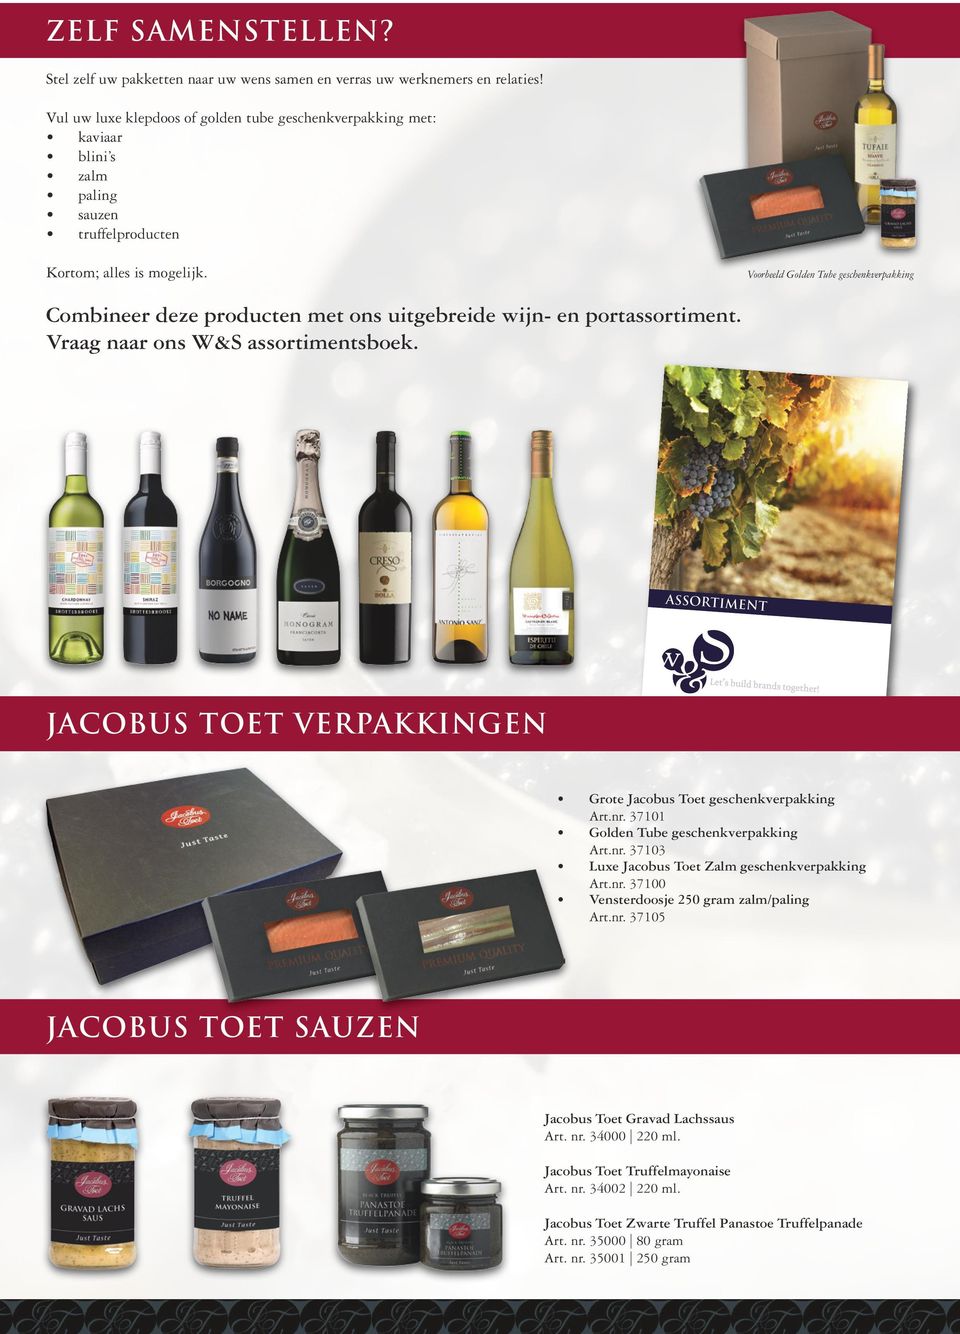 Voorbeeld Golden Tube geschenkverpakking Combineer deze producten met ons uitgebreide wijn- en portassortiment. Vraag naar ons W&S assortimentsboek.